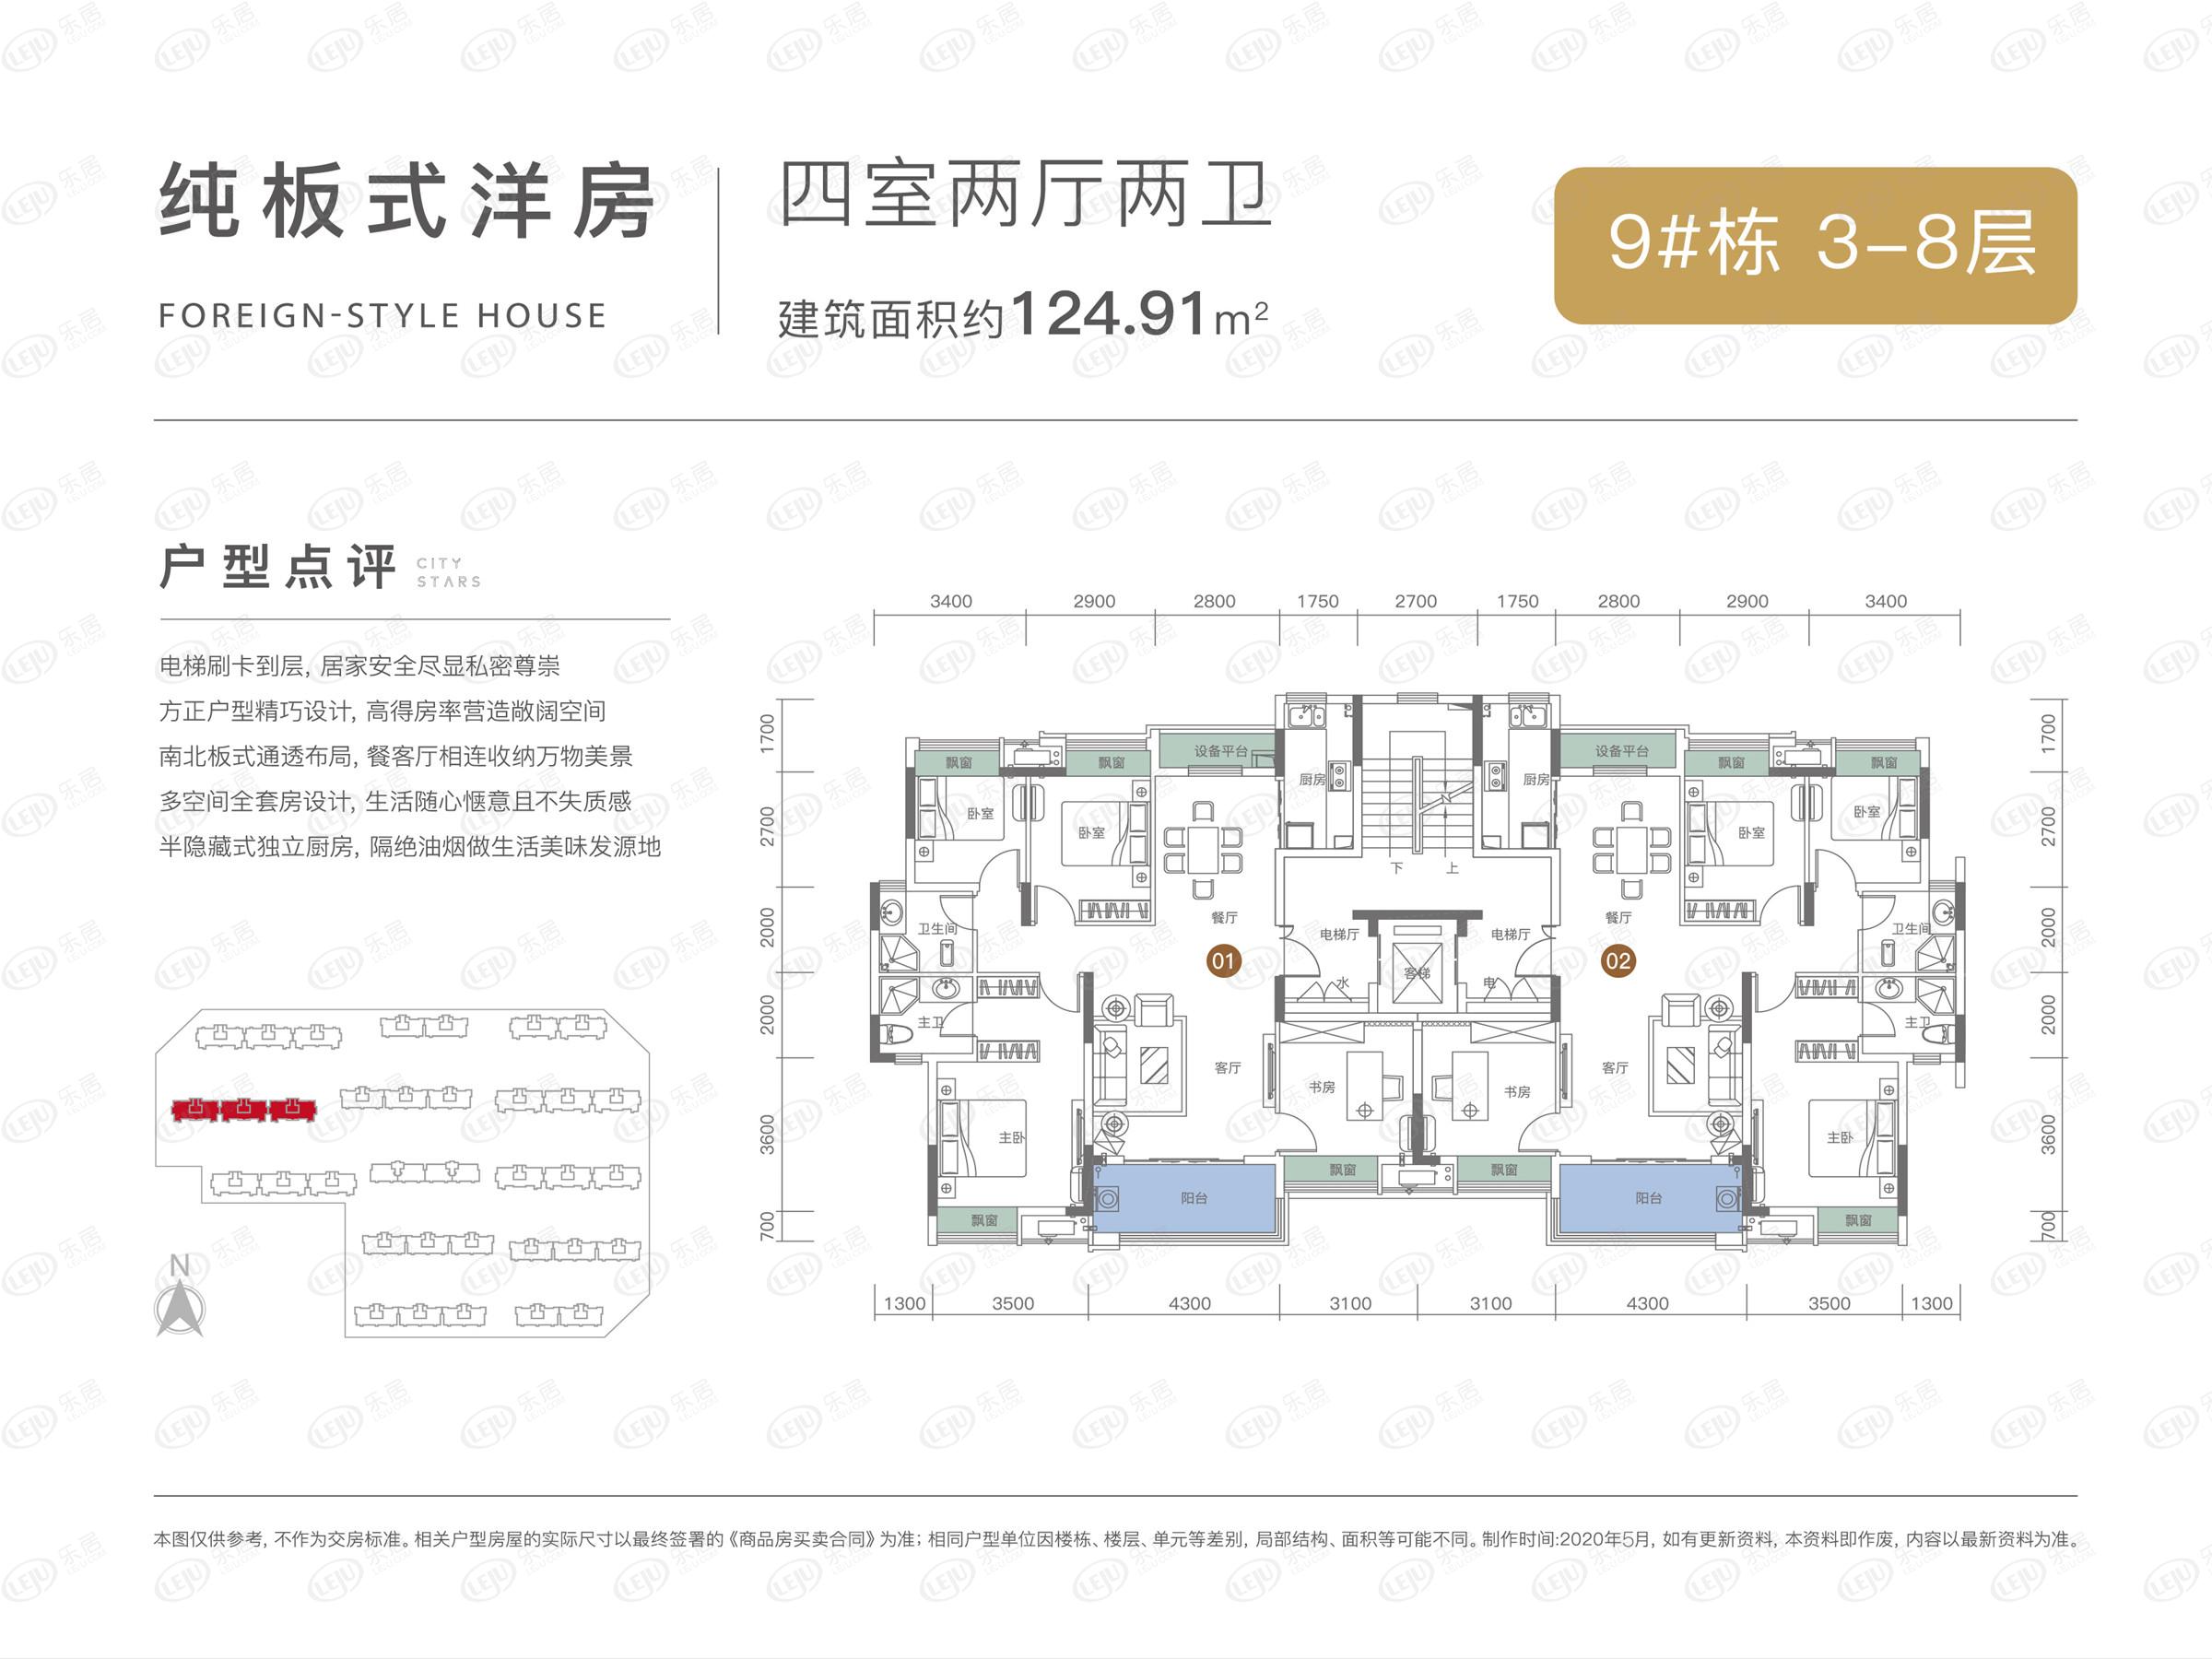 冷水滩中建·滨江新城最新价格公布  约6300元/㎡推109.75~137.48㎡房源